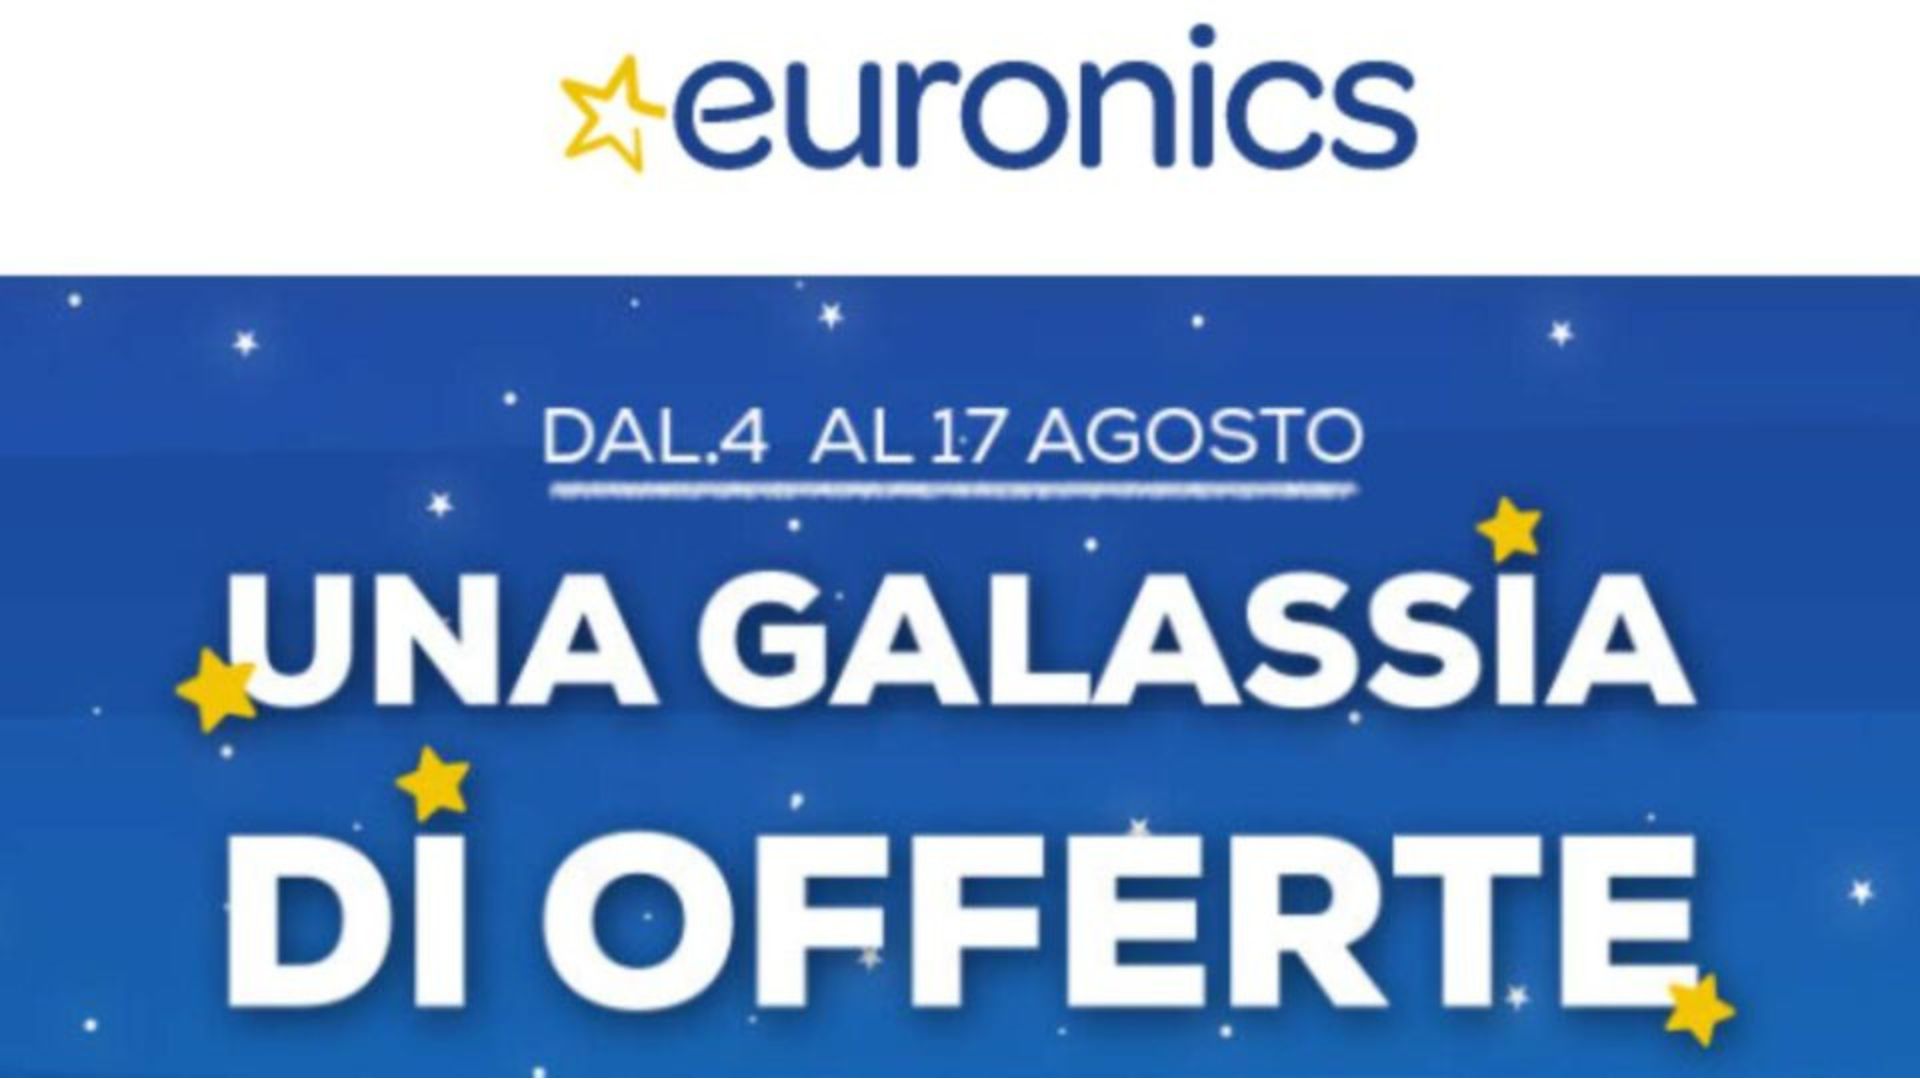 Galassia di offerte Euronics sconti tablet elettrodomestici laptop dispositivi elettronici